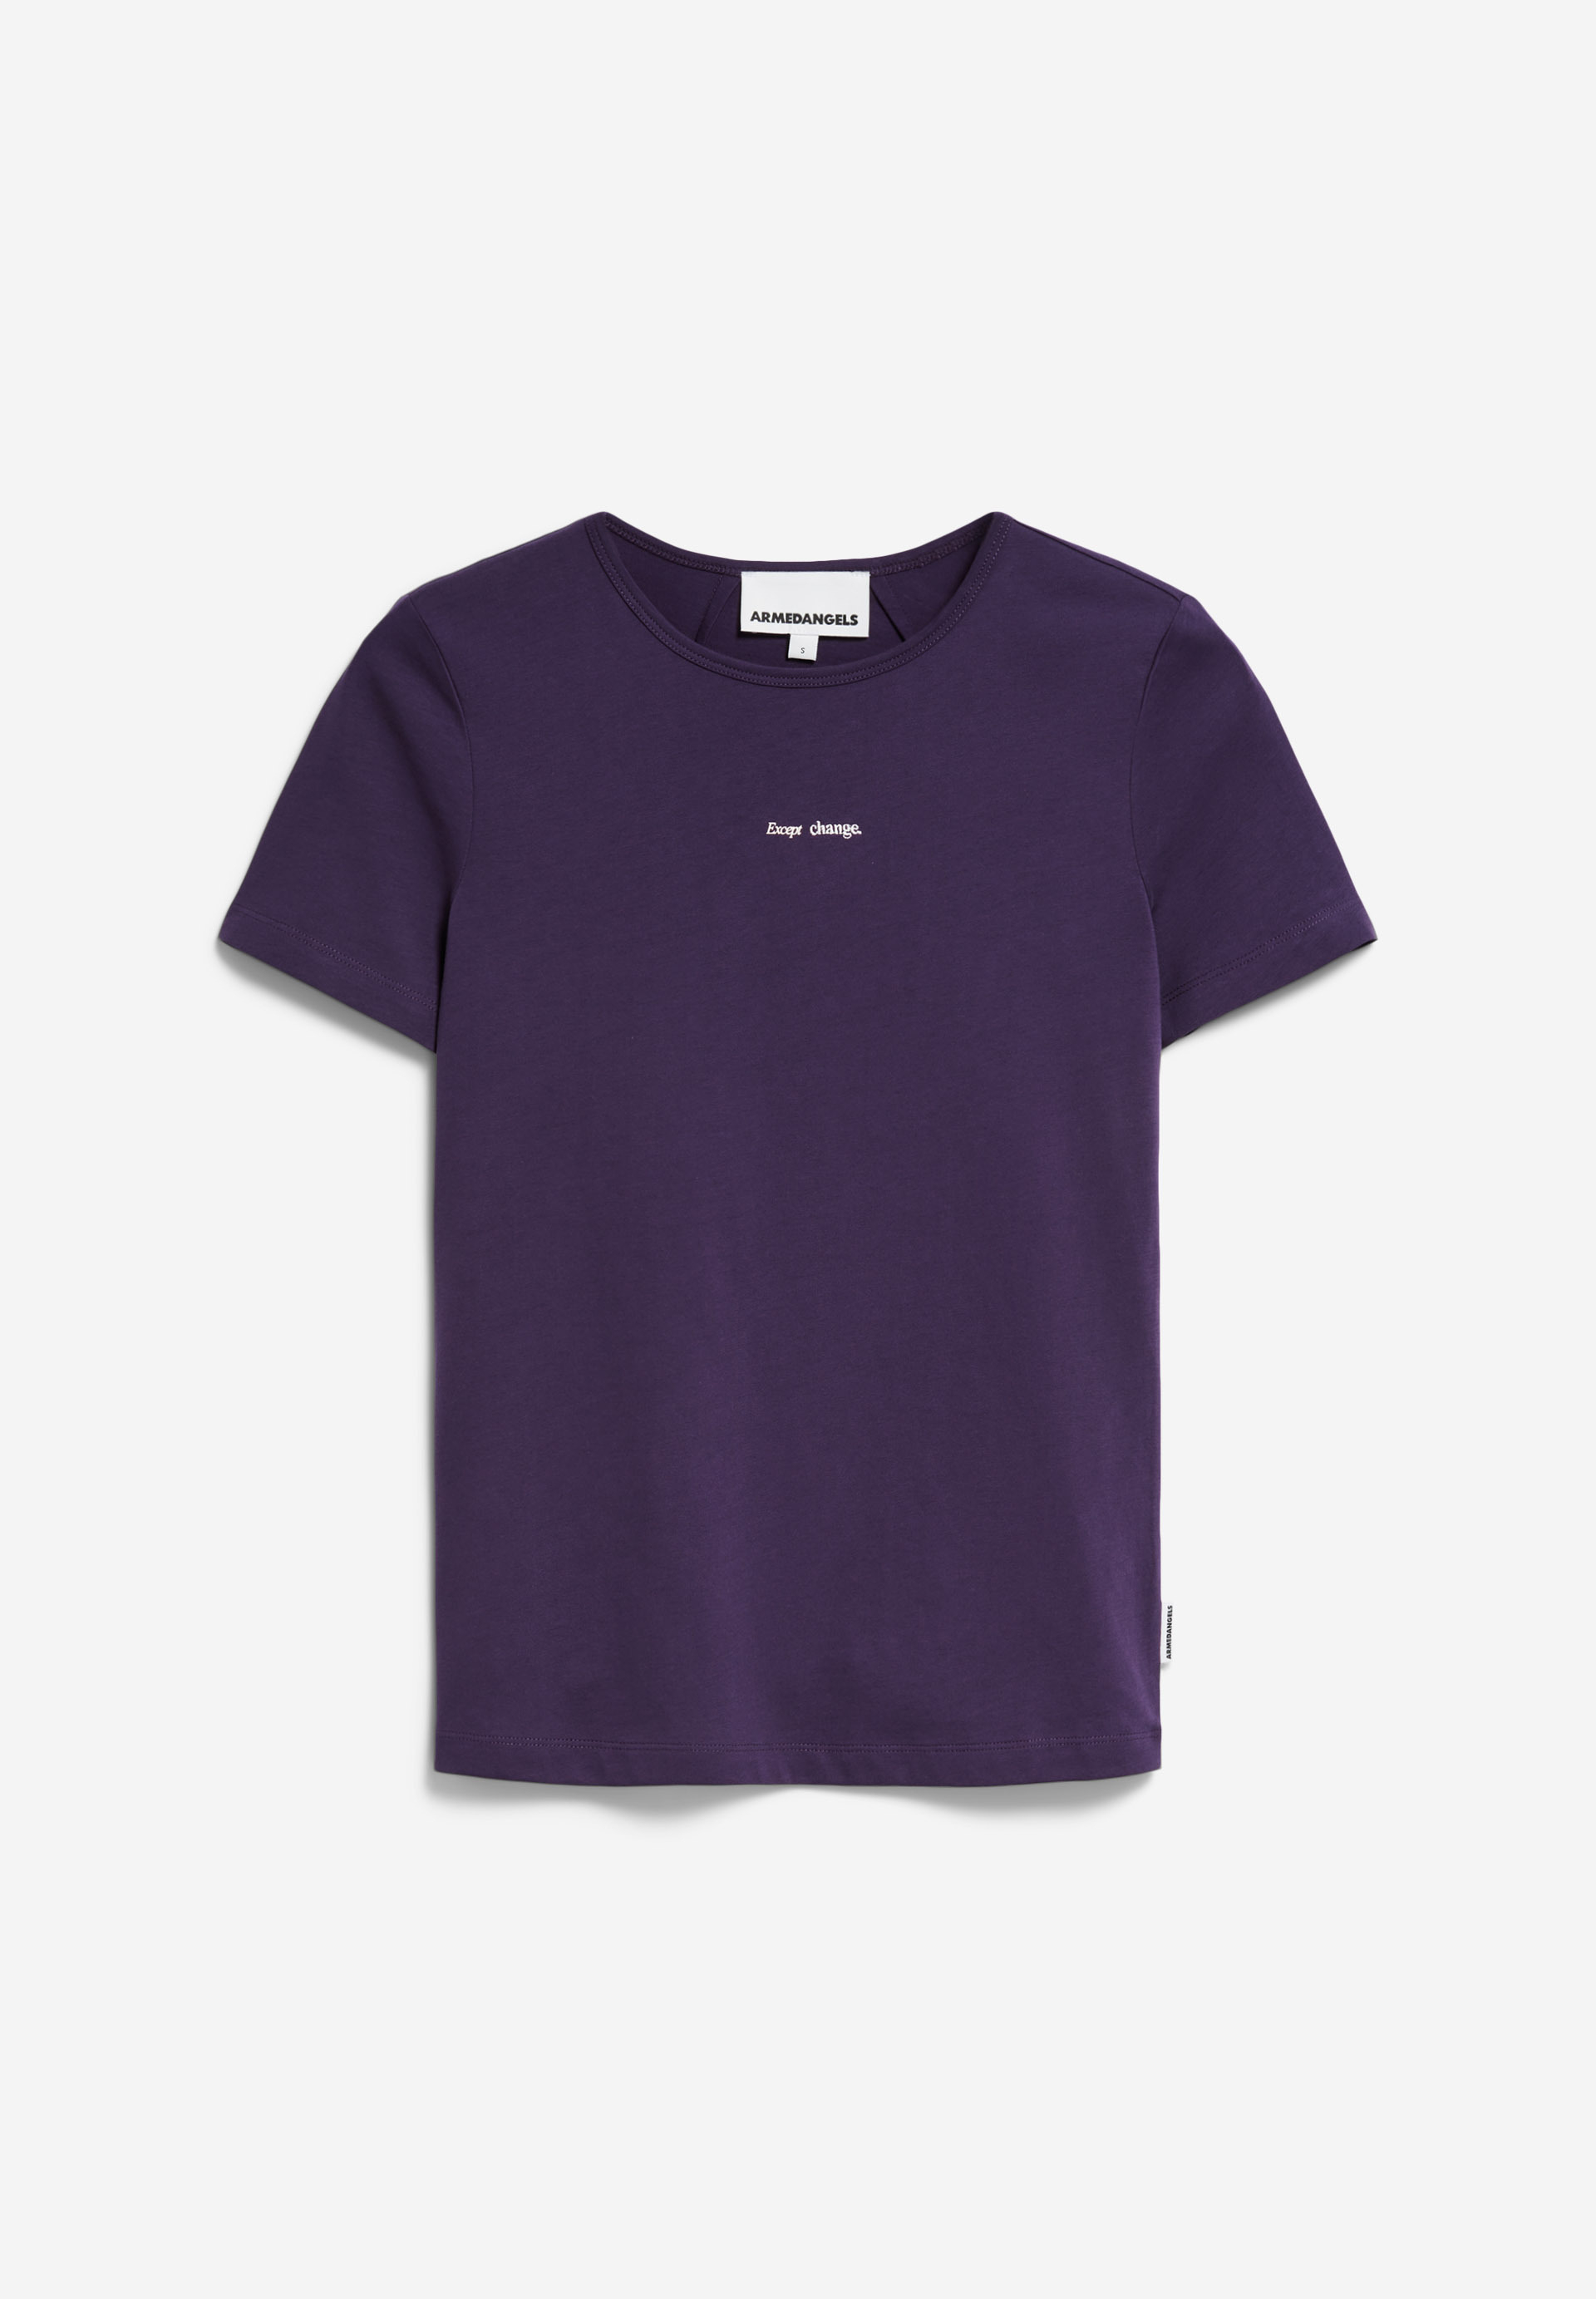 EBAANORA EXCEPT CHANGE T-shirt coupe ajustée en coton bio